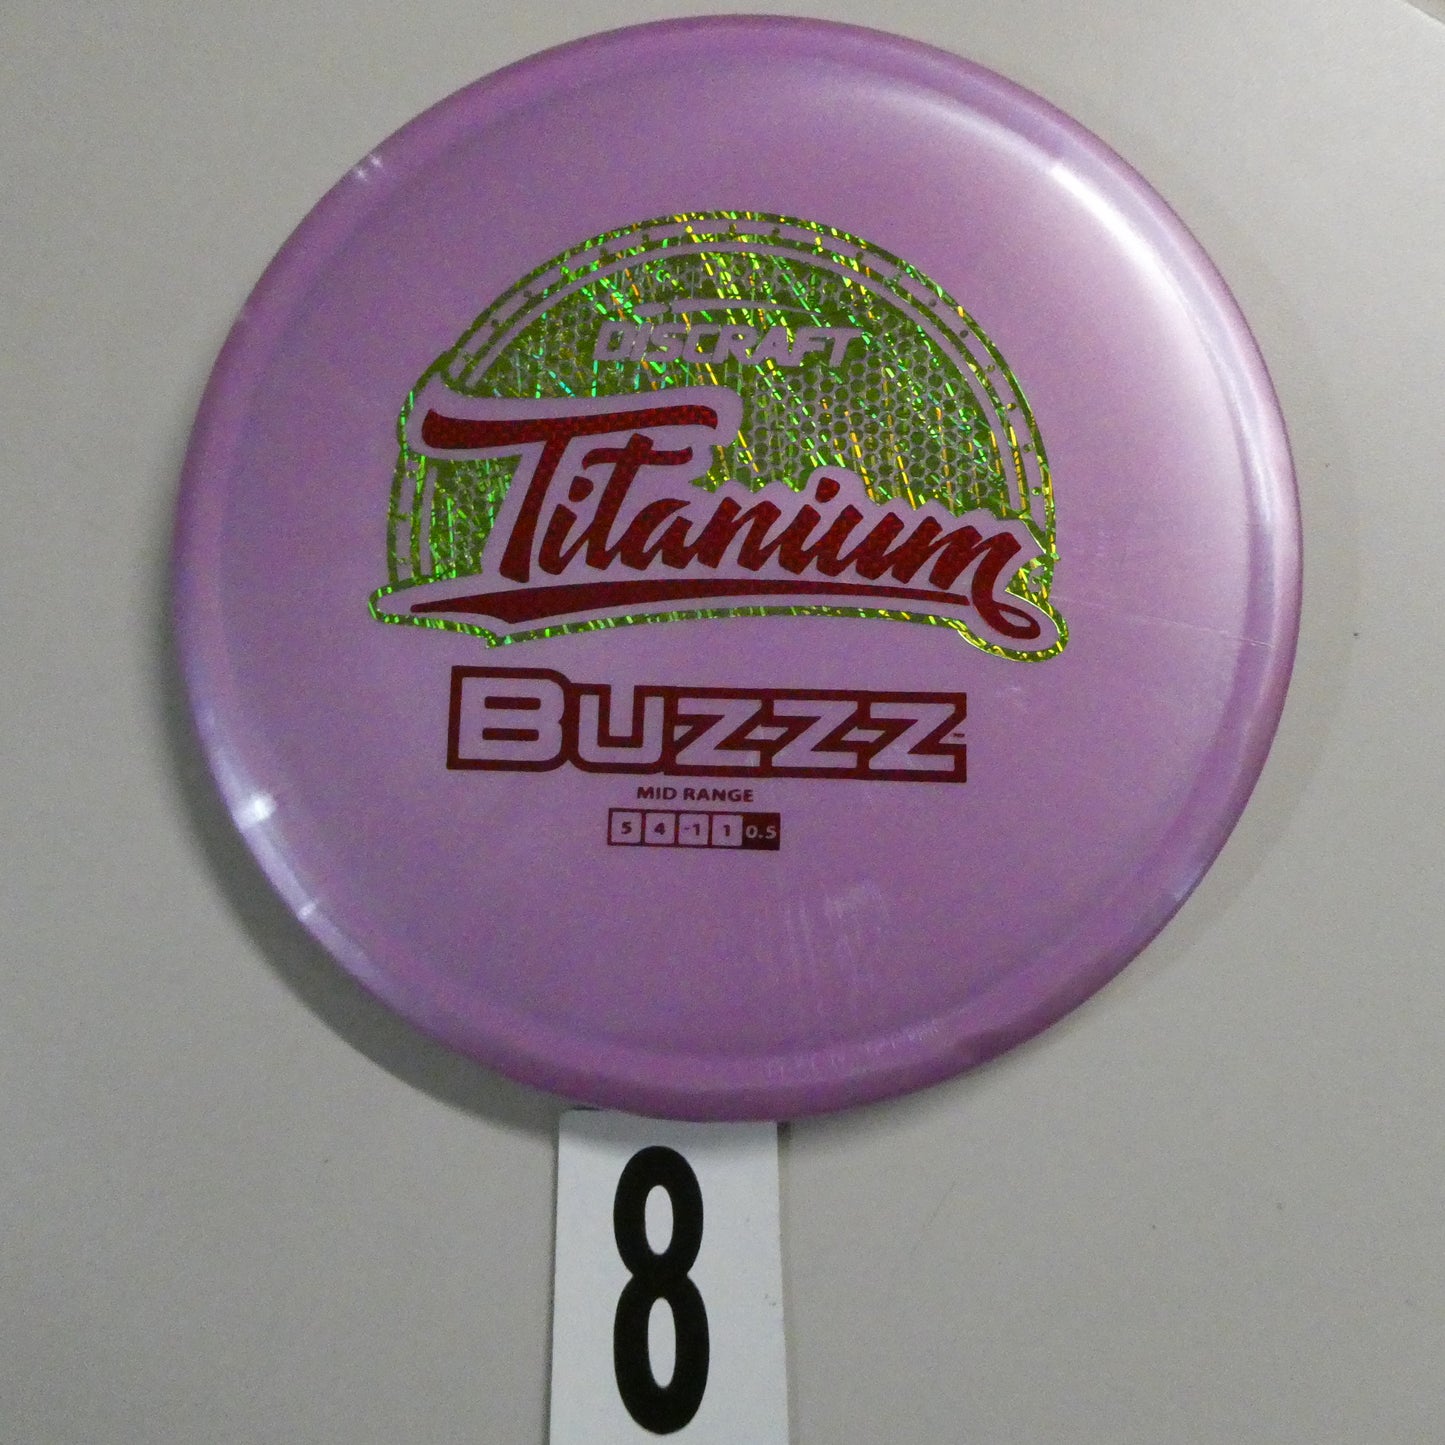 Titanium Buzzz